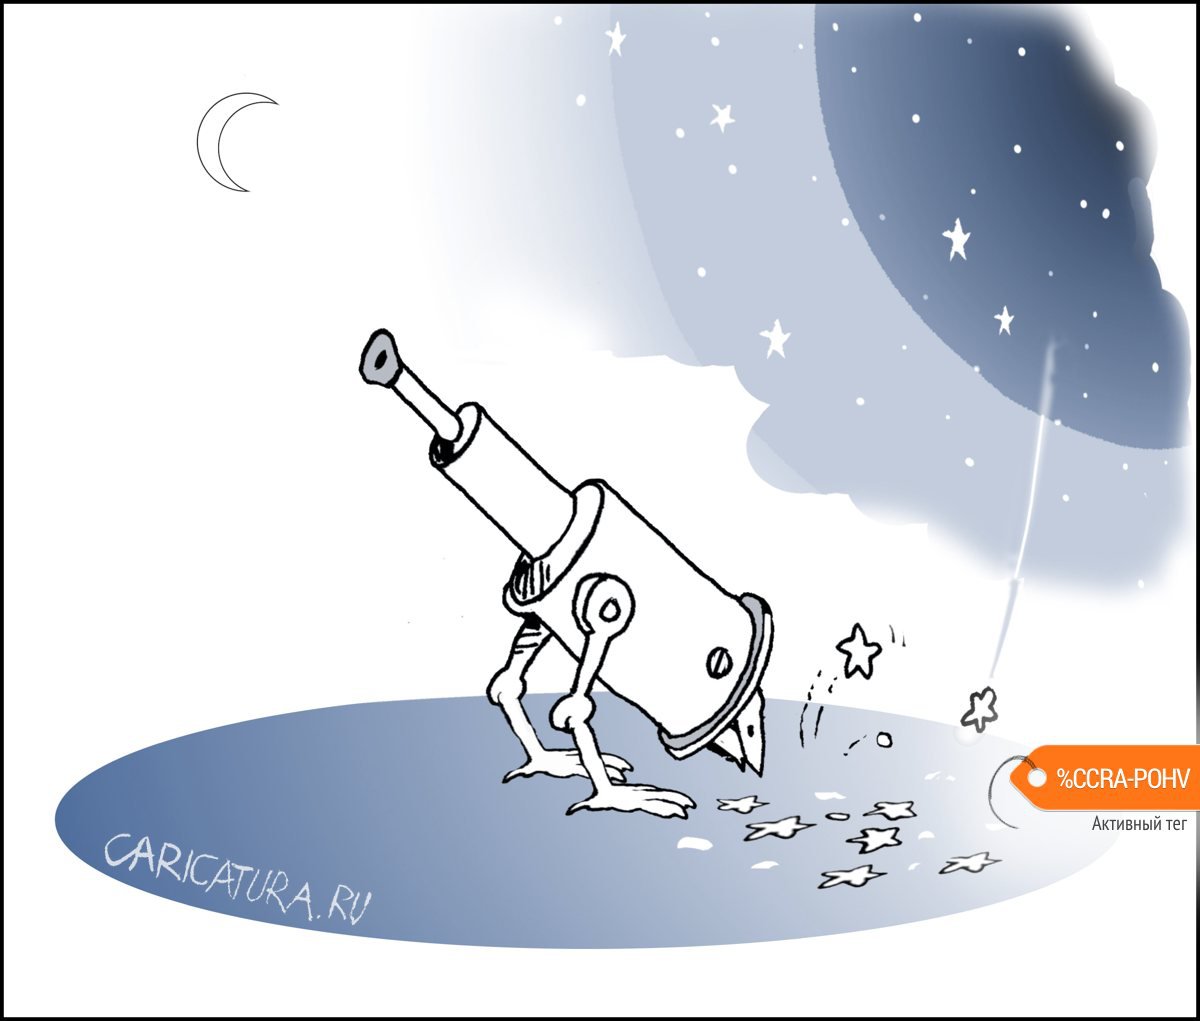 Карикатура "Телескоп", Александр Уваров